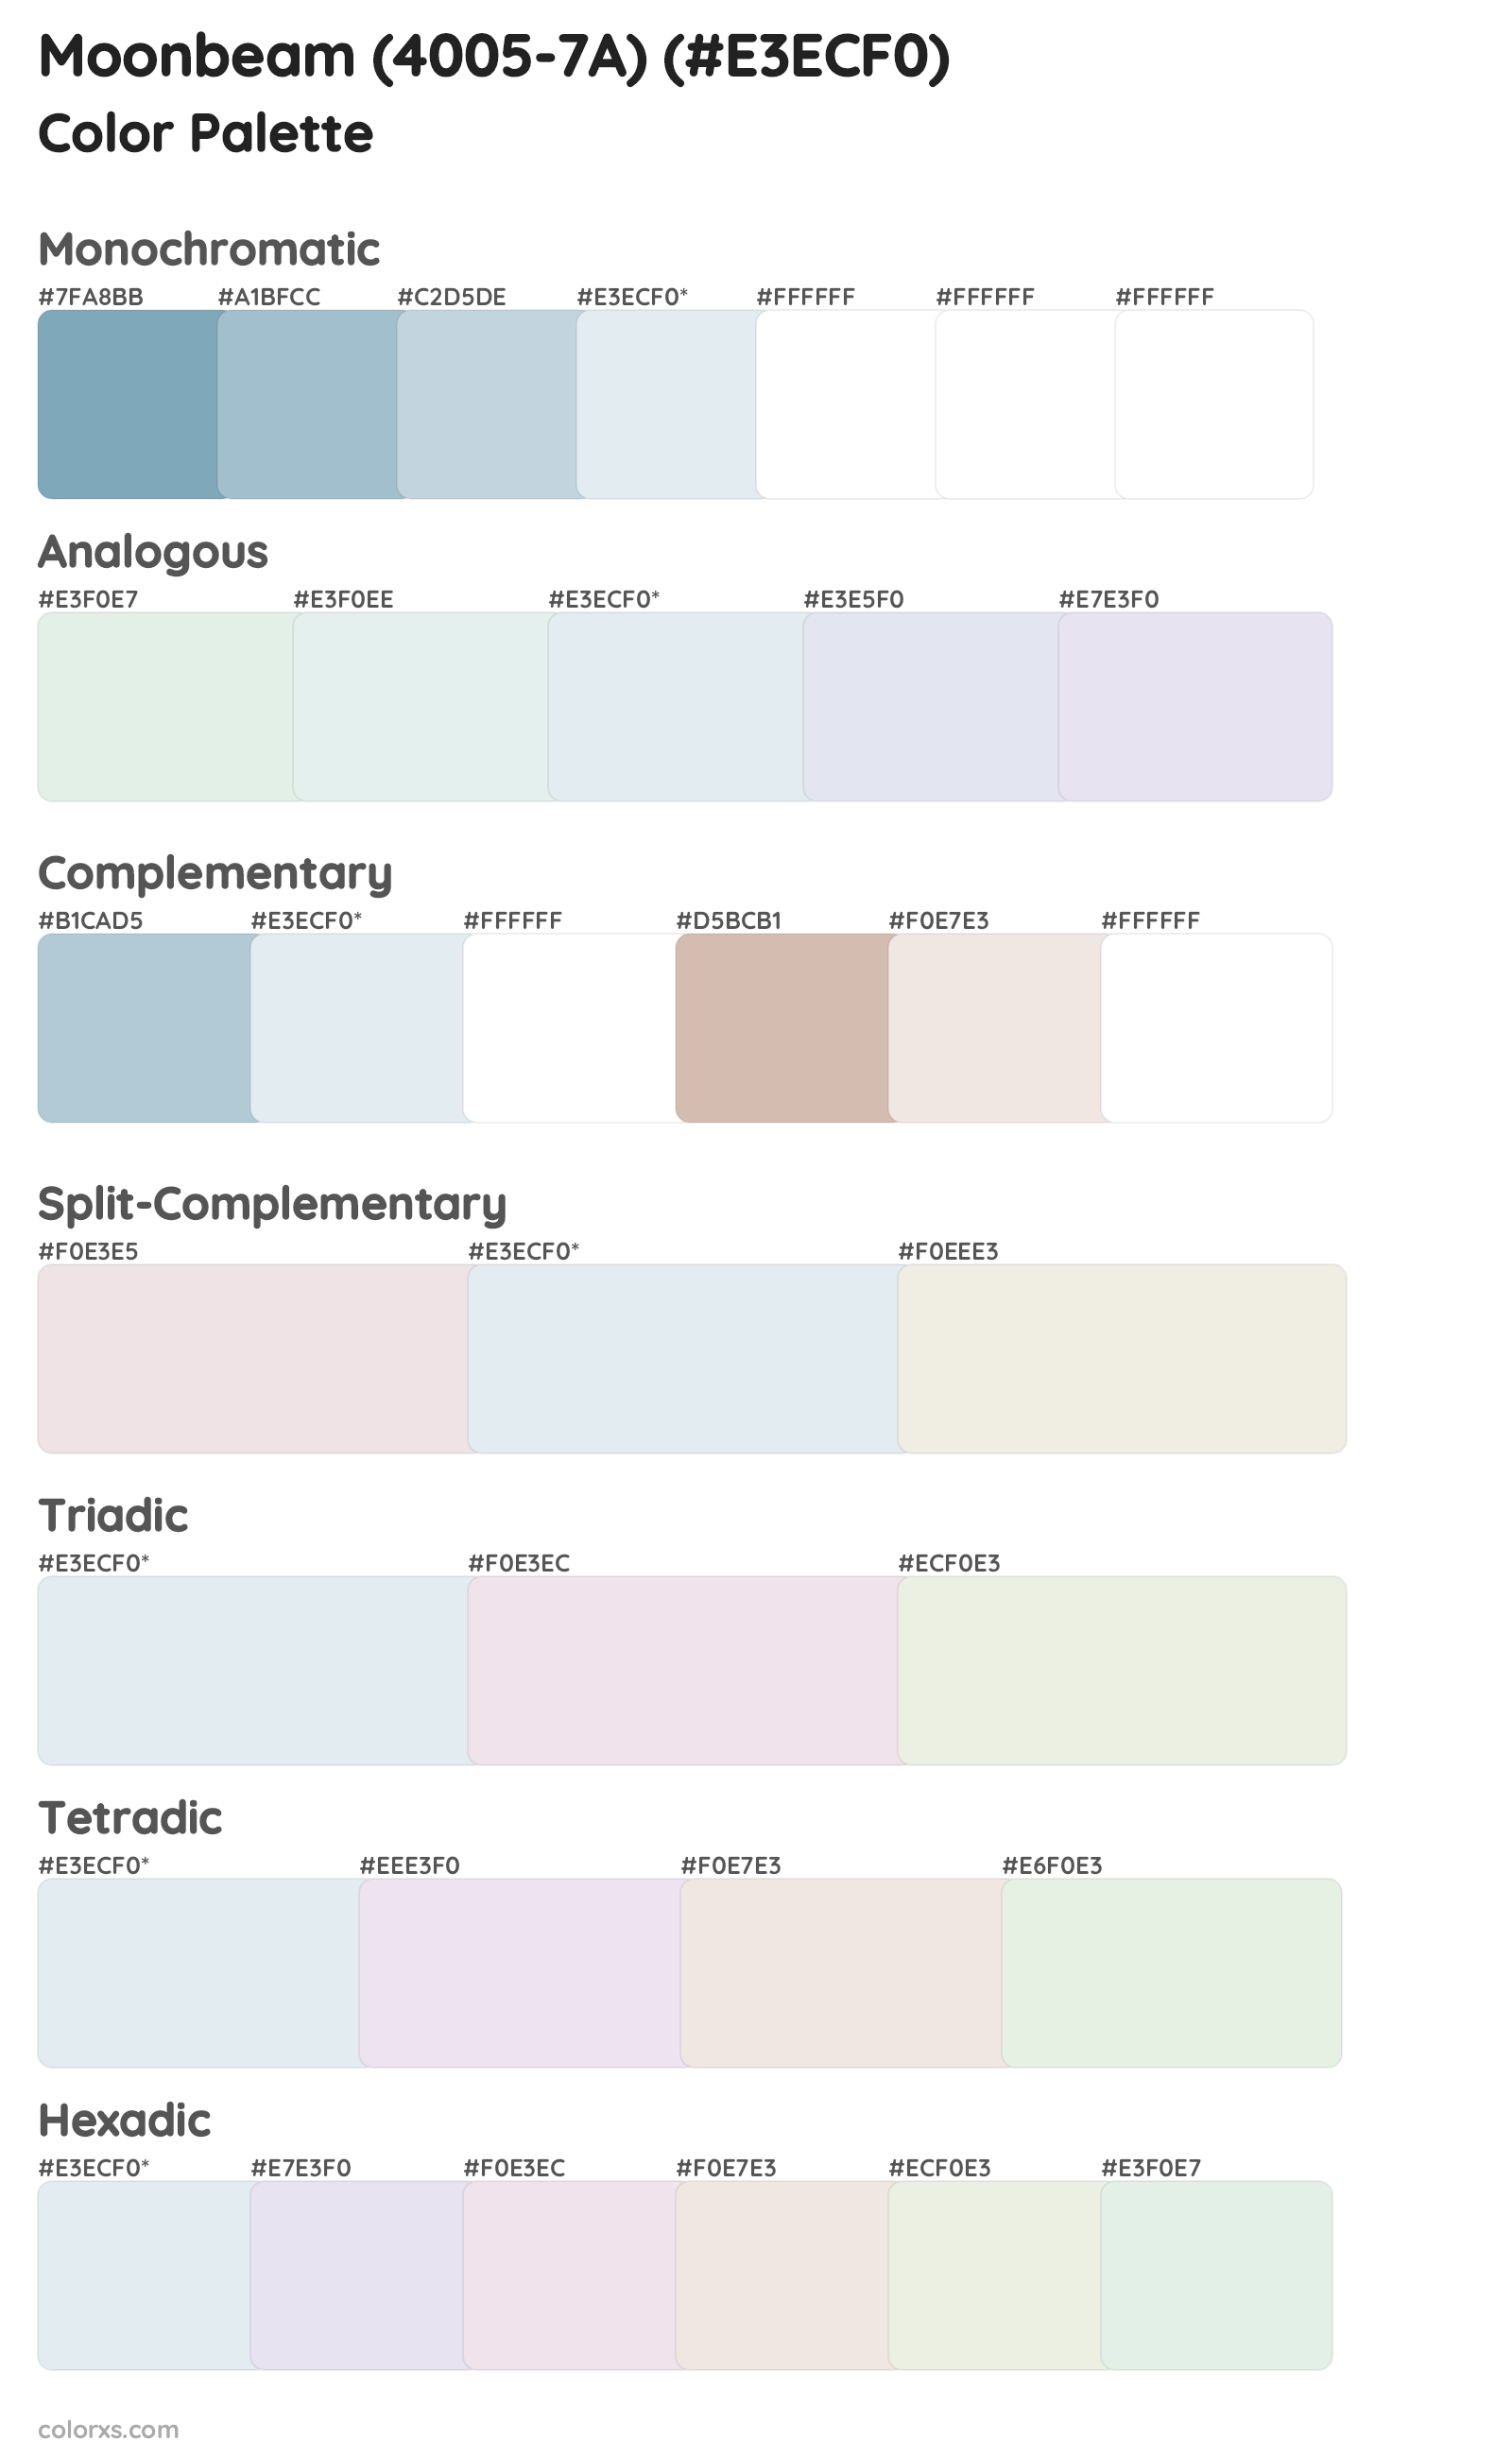 Moonbeam (4005-7A) Color Scheme Palettes